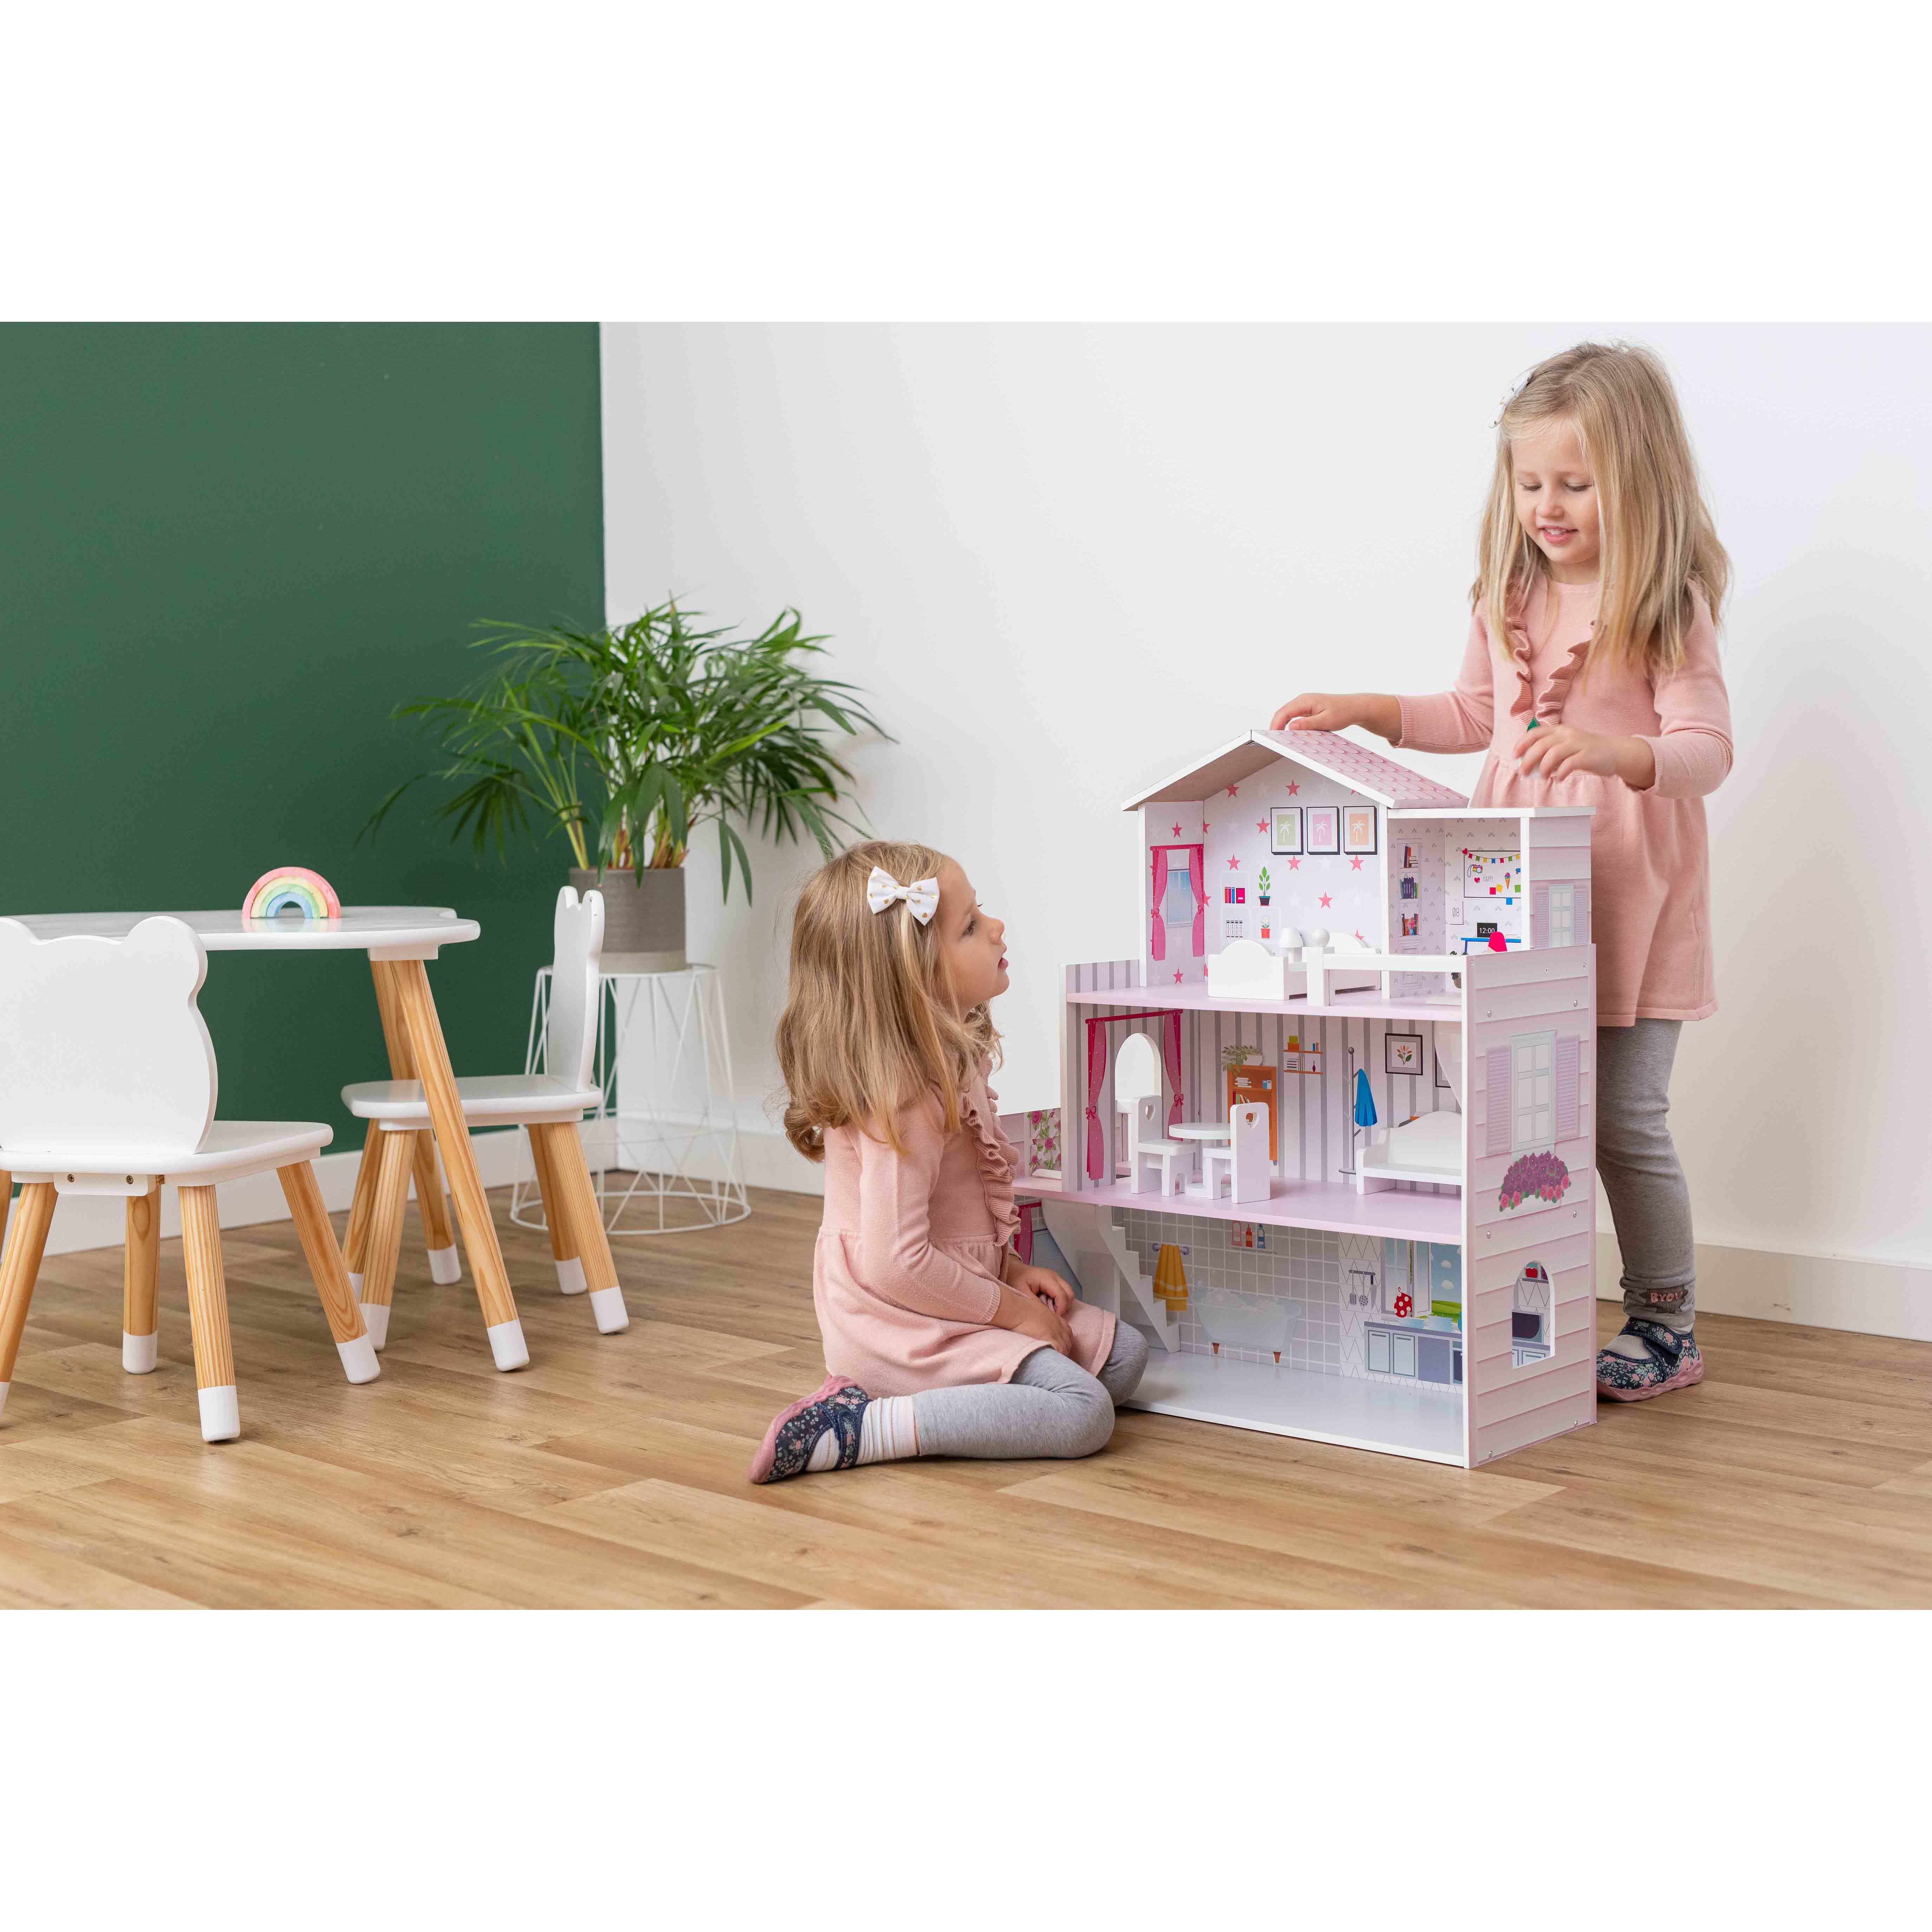 Іграшковий будиночок дерев'яний FreeON рожевий (47290) - фото 18